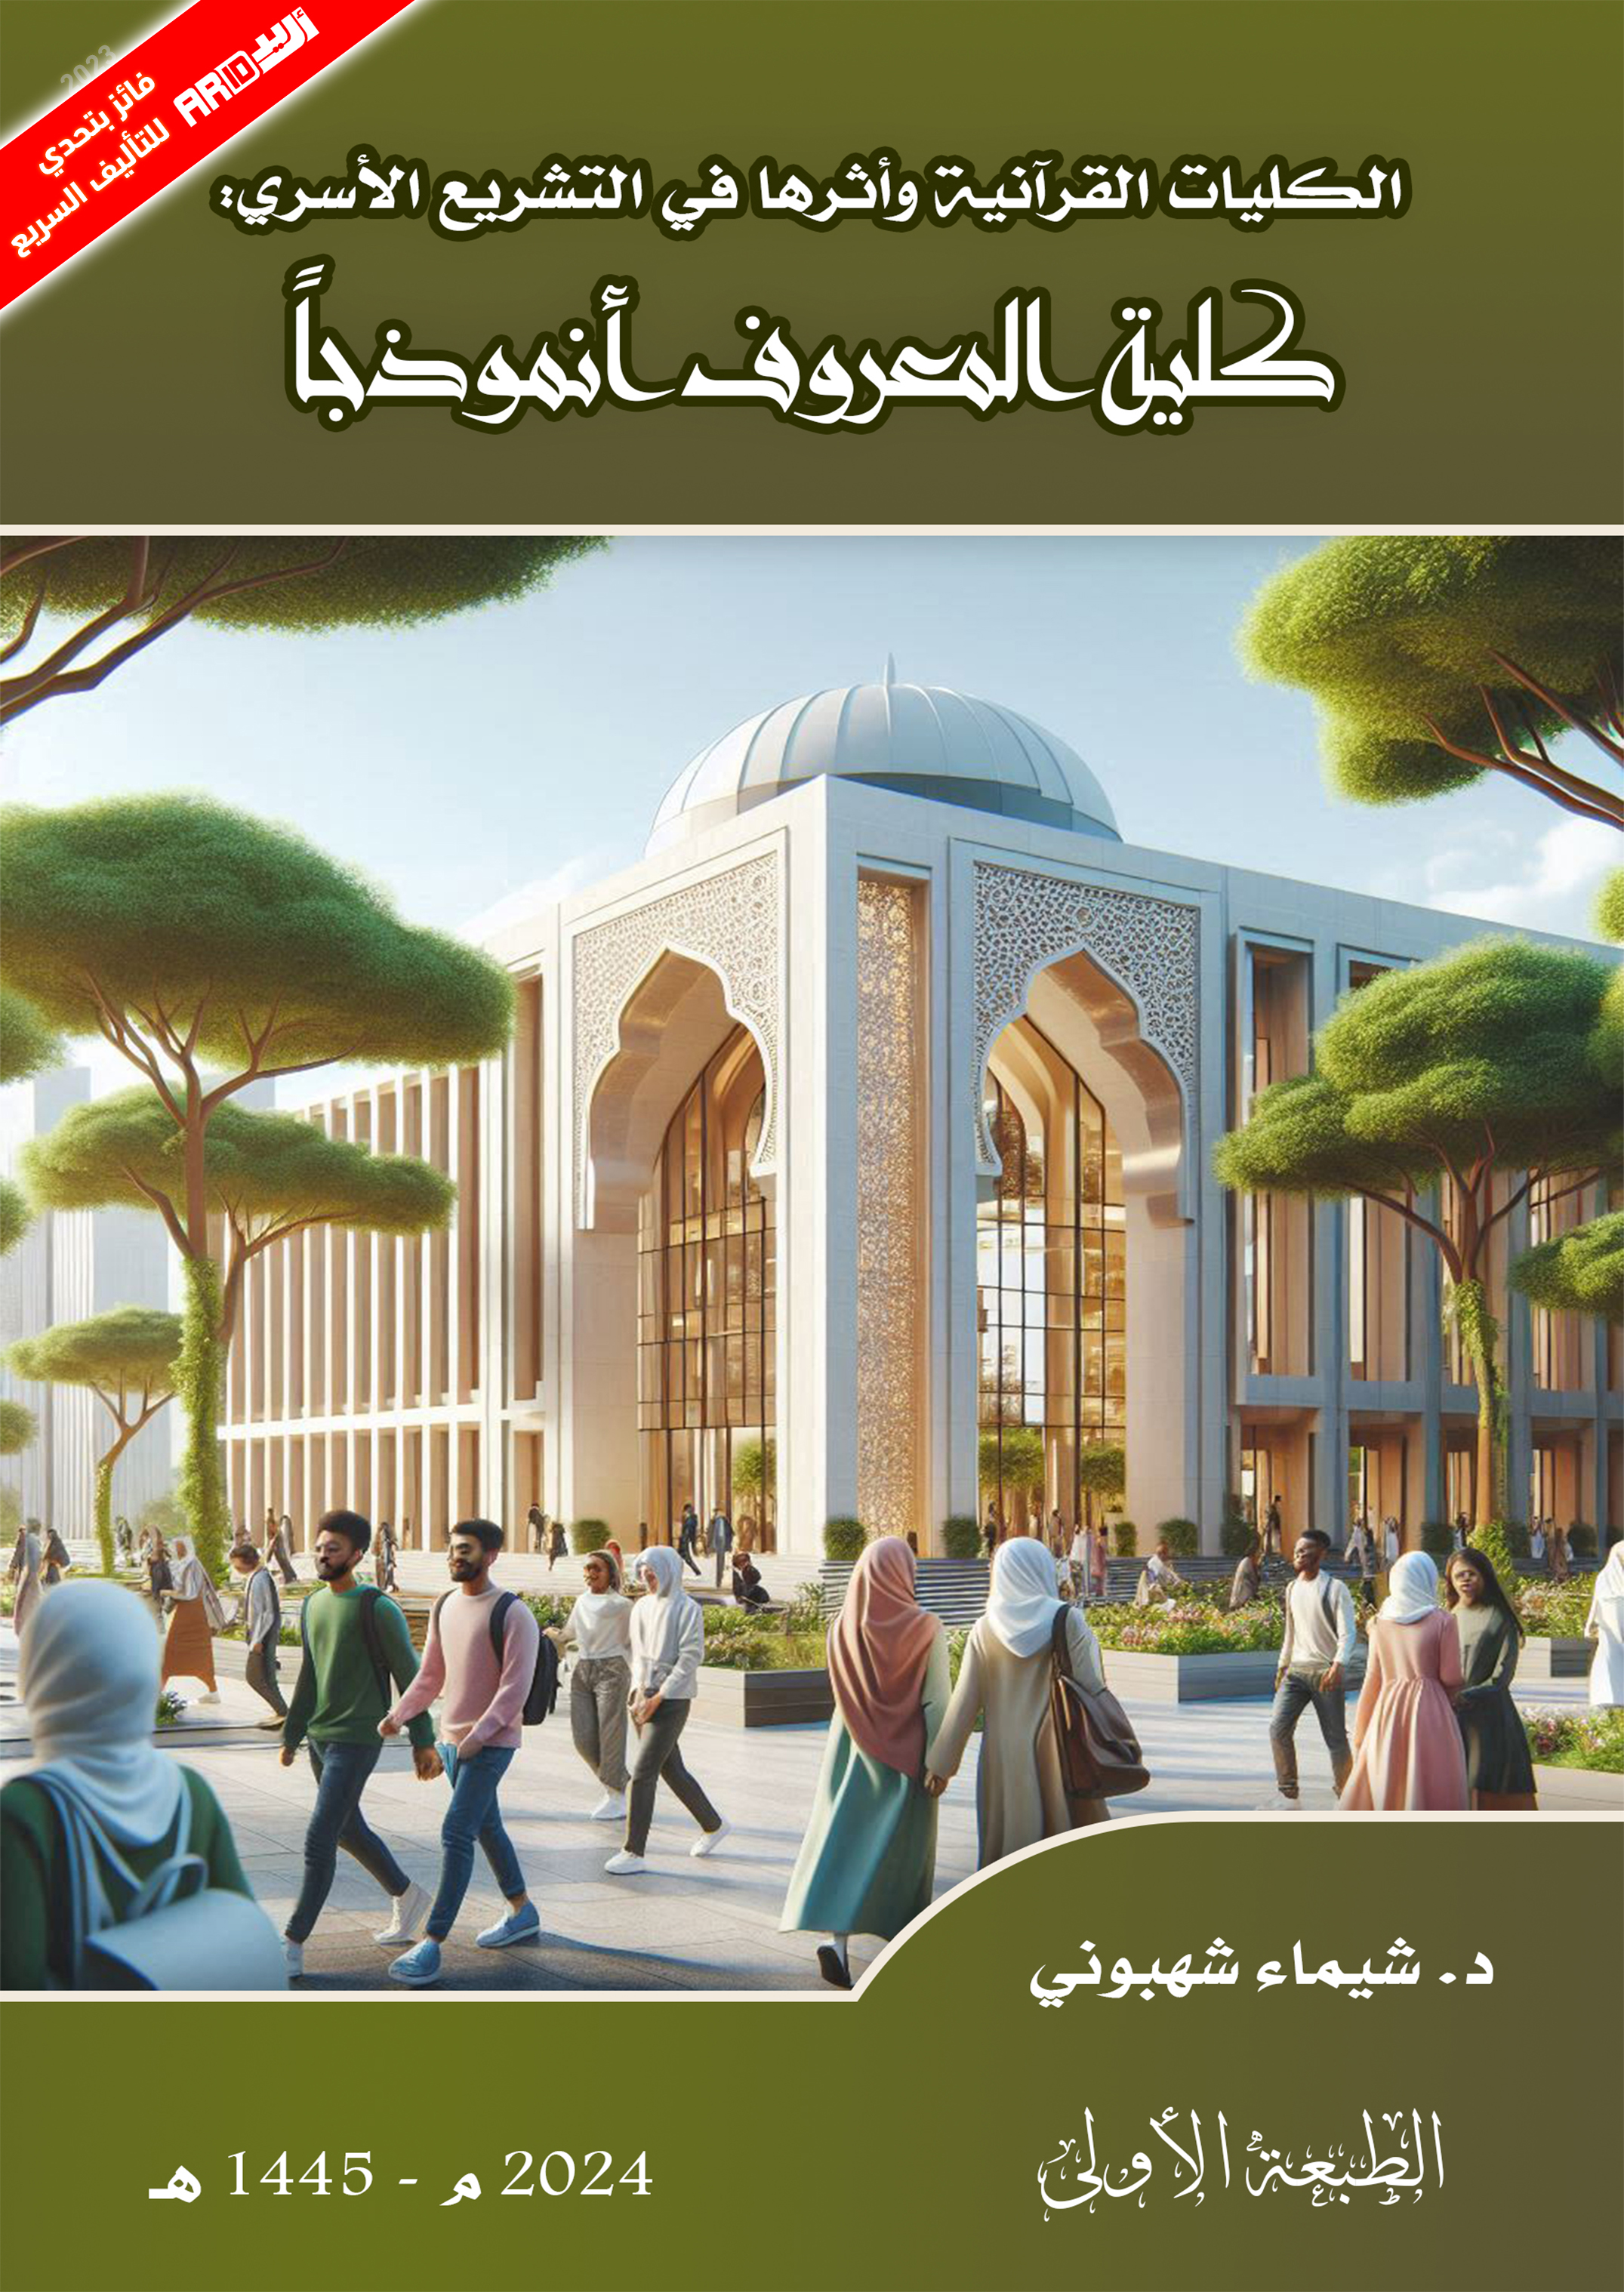 الكليات القرآنية وأثرها في التشريع الأسري: كلية المعروف أنموذجاً